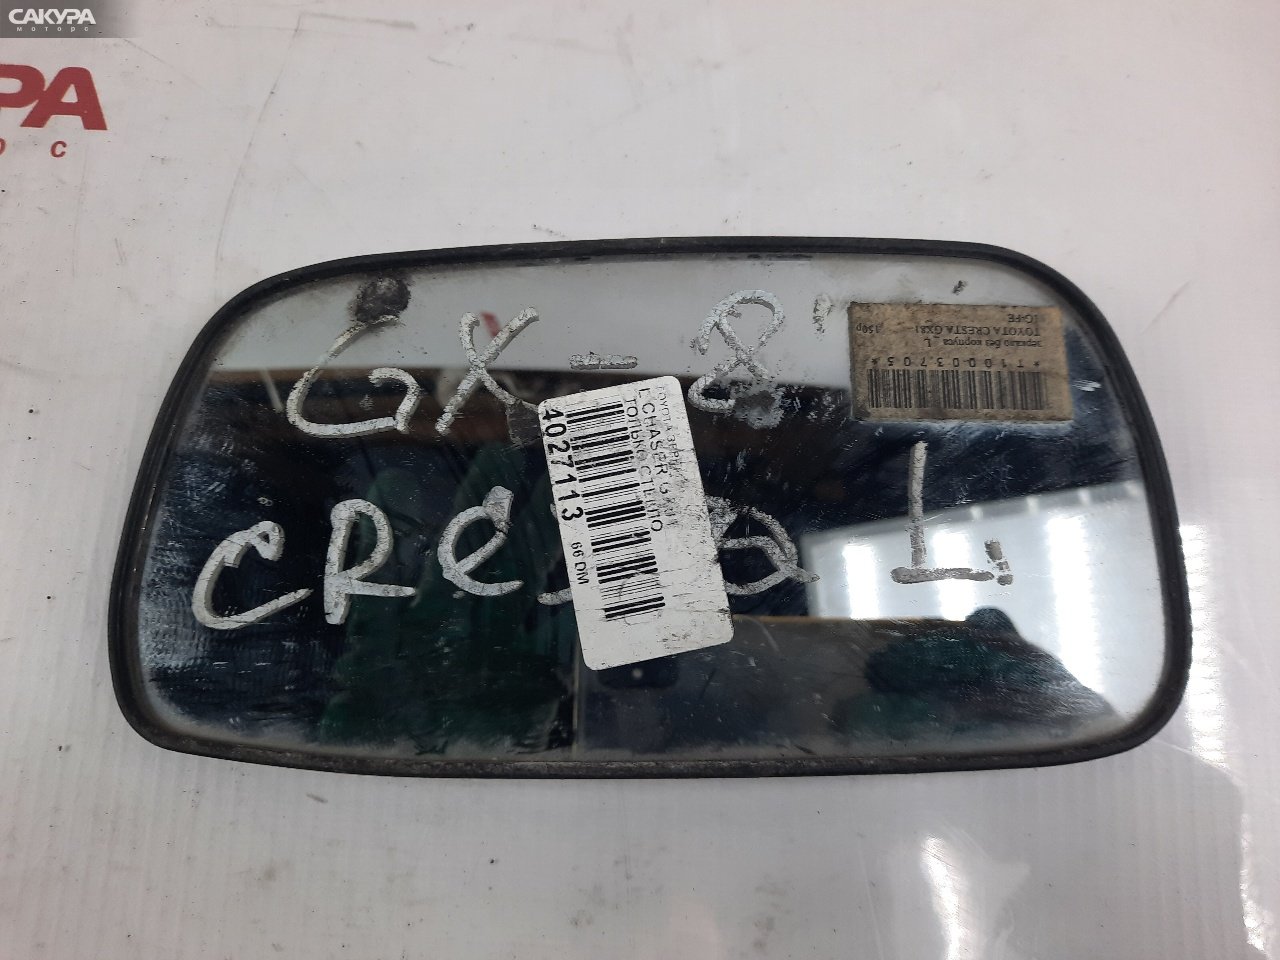 Зеркало боковое левое Toyota Chaser GX81: купить в Сакура Красноярск.